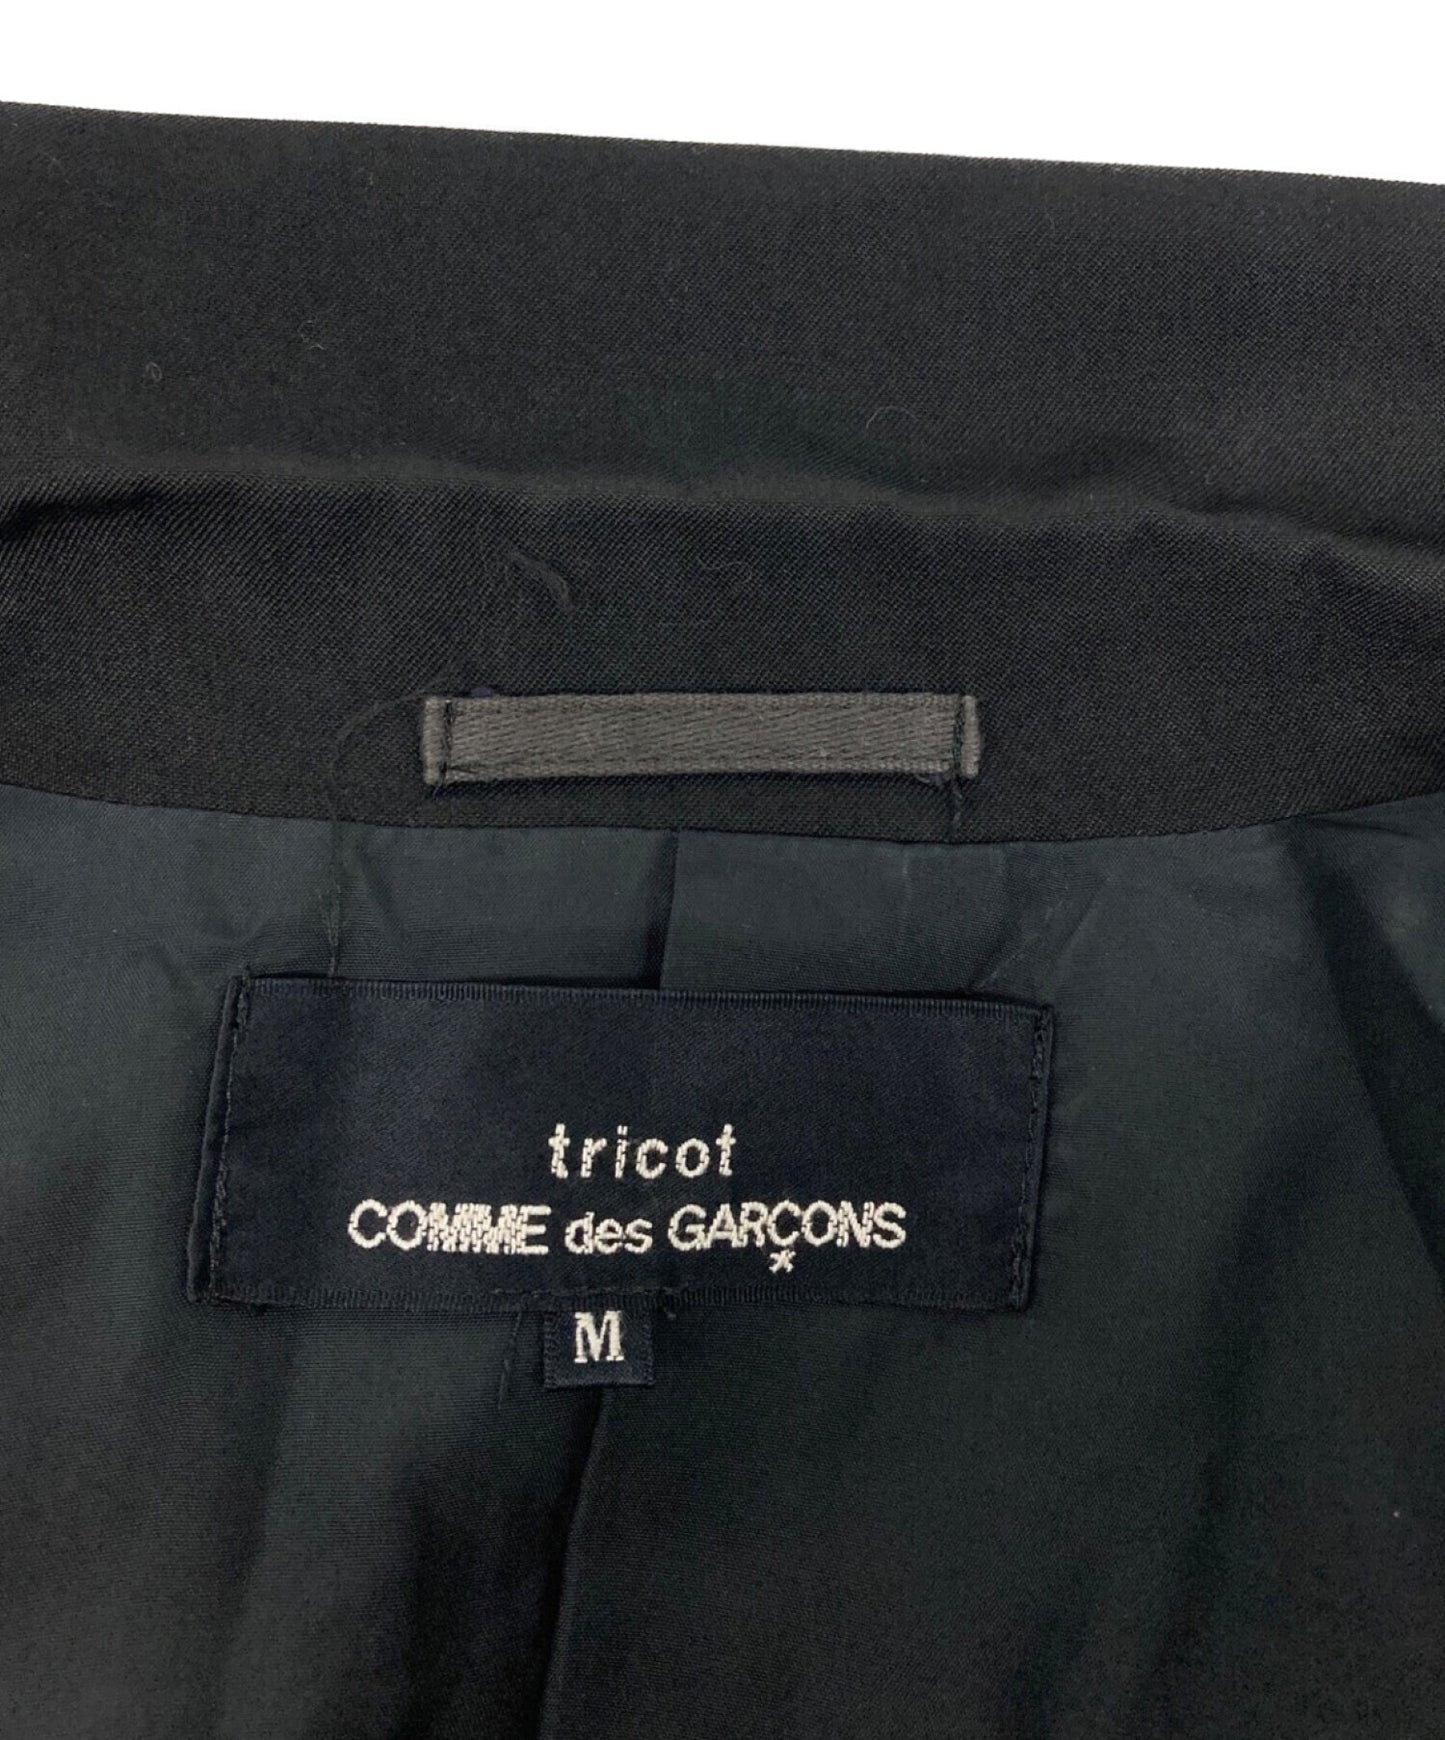 Tricot Comme des Garcons 3B羊毛Gaber夾克TJ-08001M